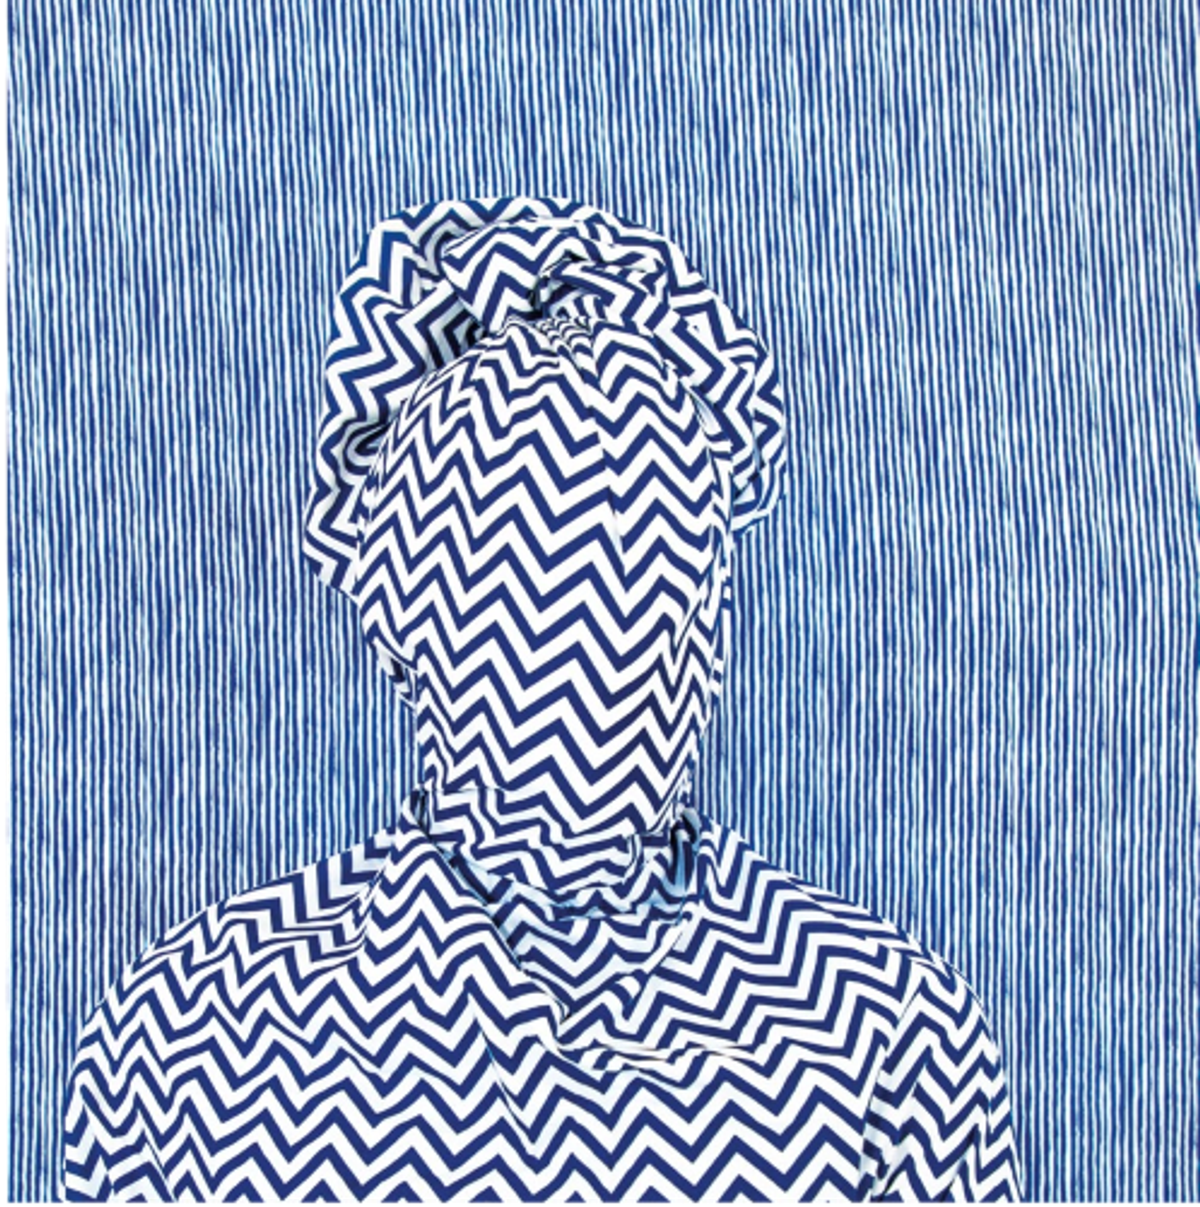 Alia Ali, Rain, série Indigo, 2021, impression pigmentaire avec stratifié UV montée sur Dibond en aluminium. Courtesy de l’artiste et 193 Gallery.